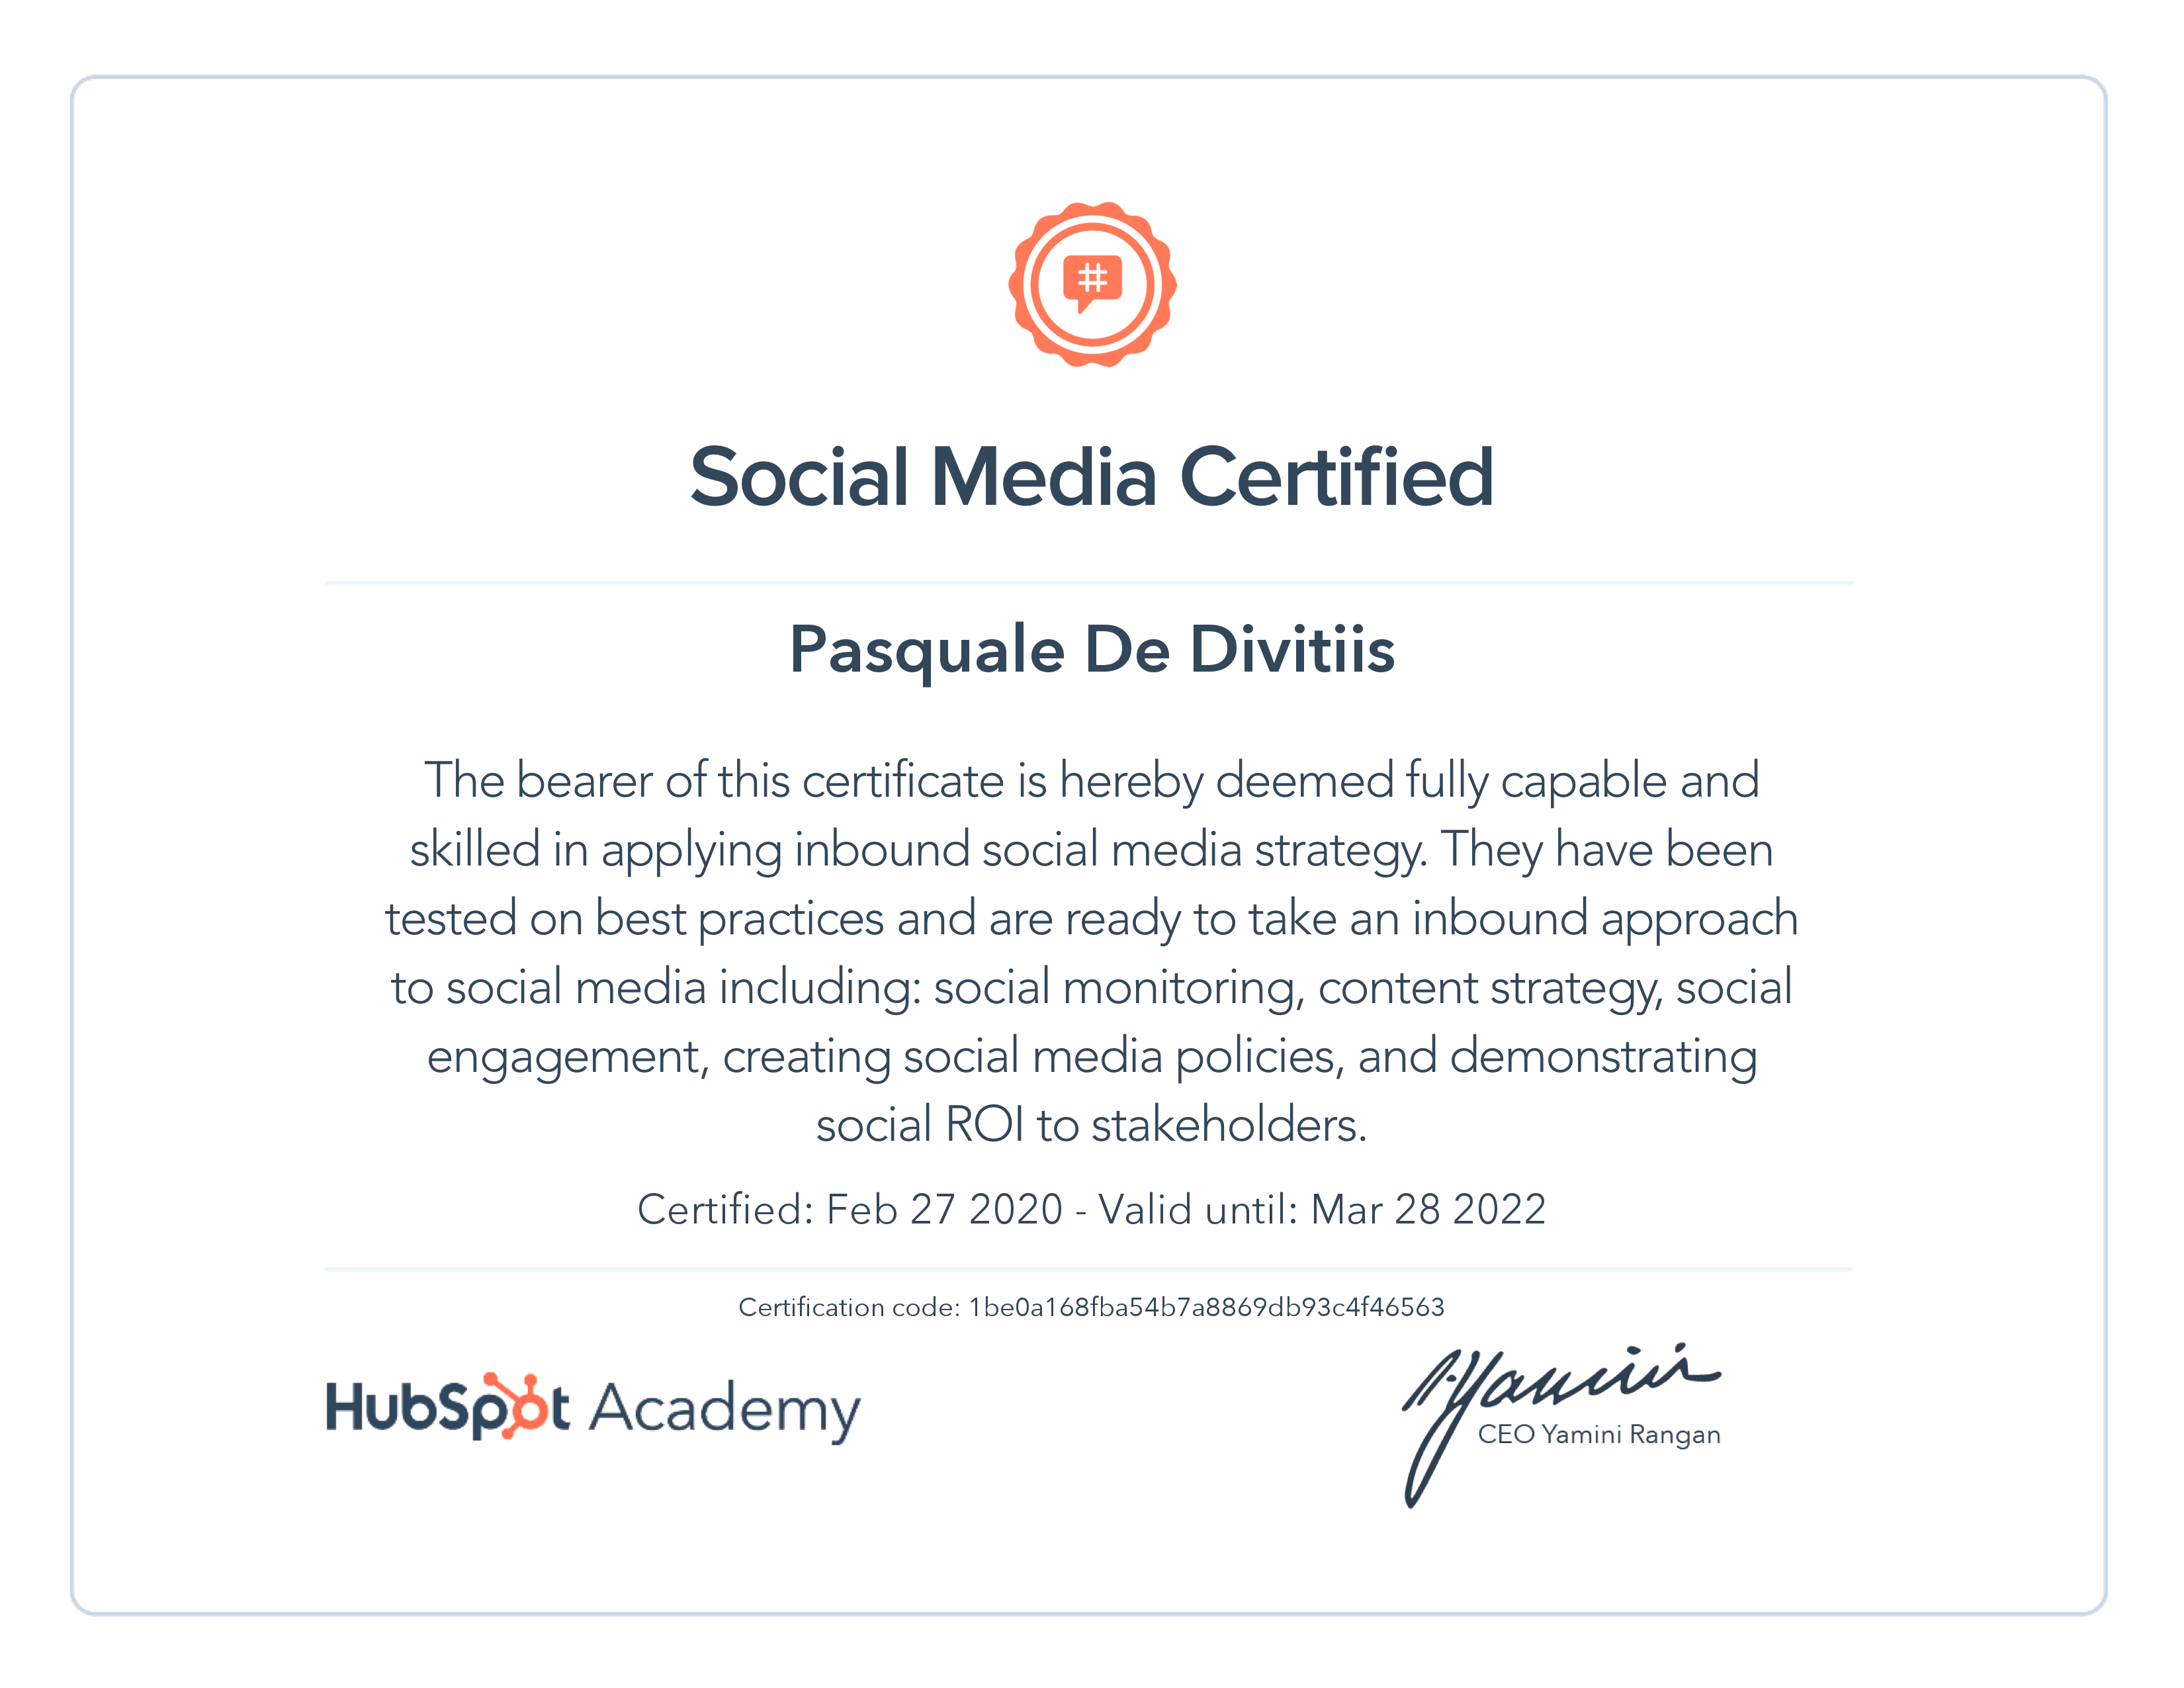 HubSpot Academy / Social Media Marketing Certification 